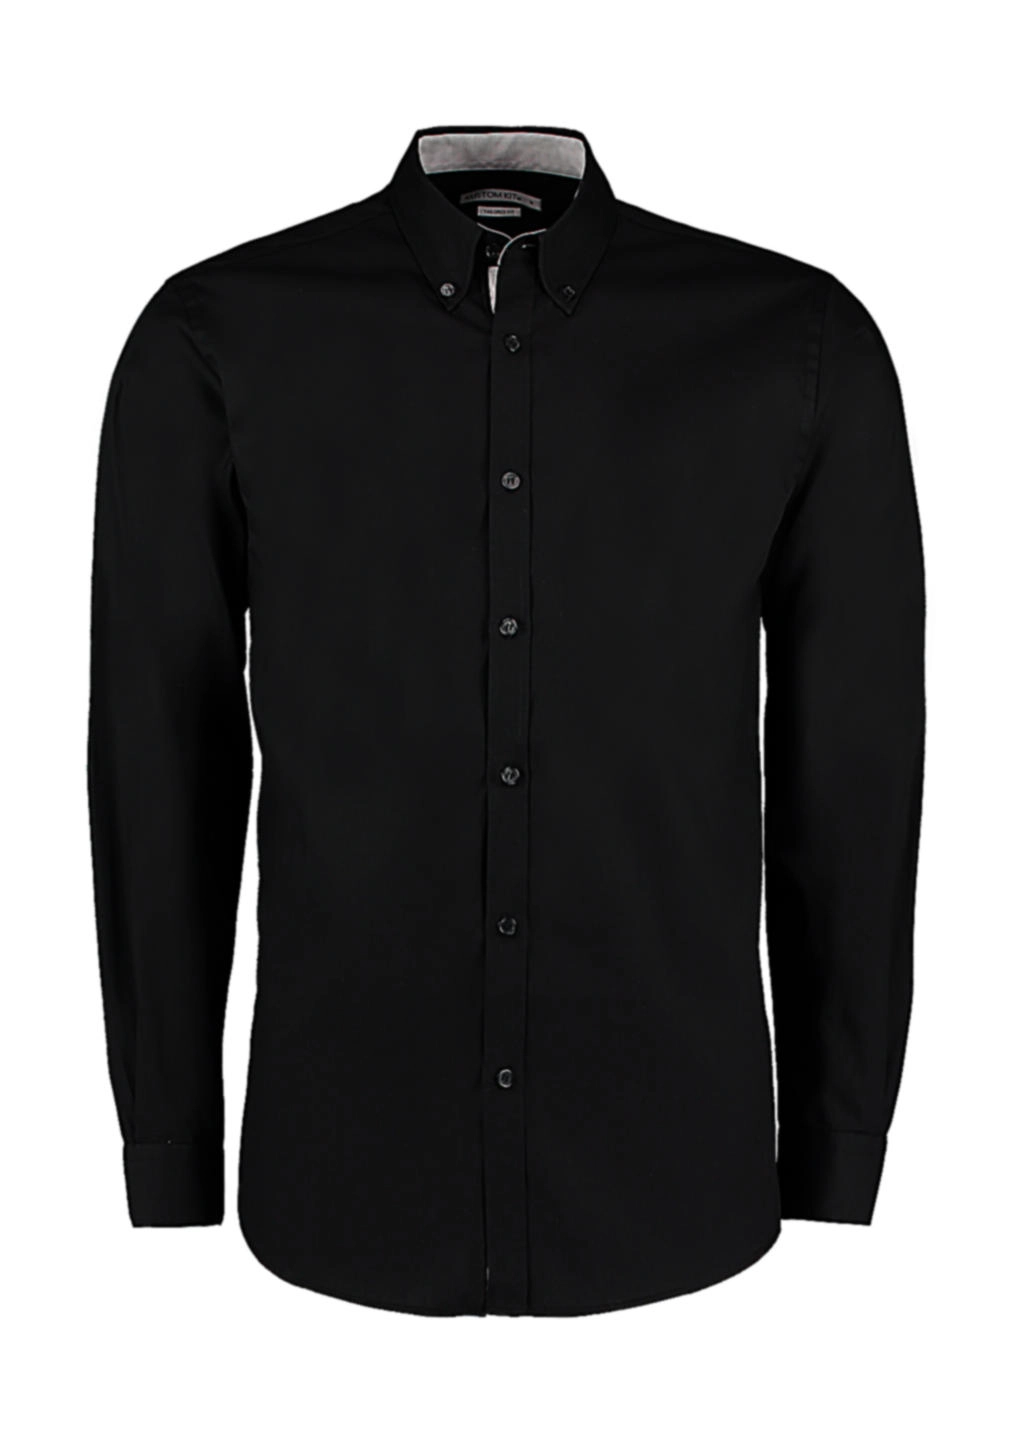 Tailored Fit Premium Contrast Oxford Shirt zum Besticken und Bedrucken in der Farbe Black/Silver mit Ihren Logo, Schriftzug oder Motiv.